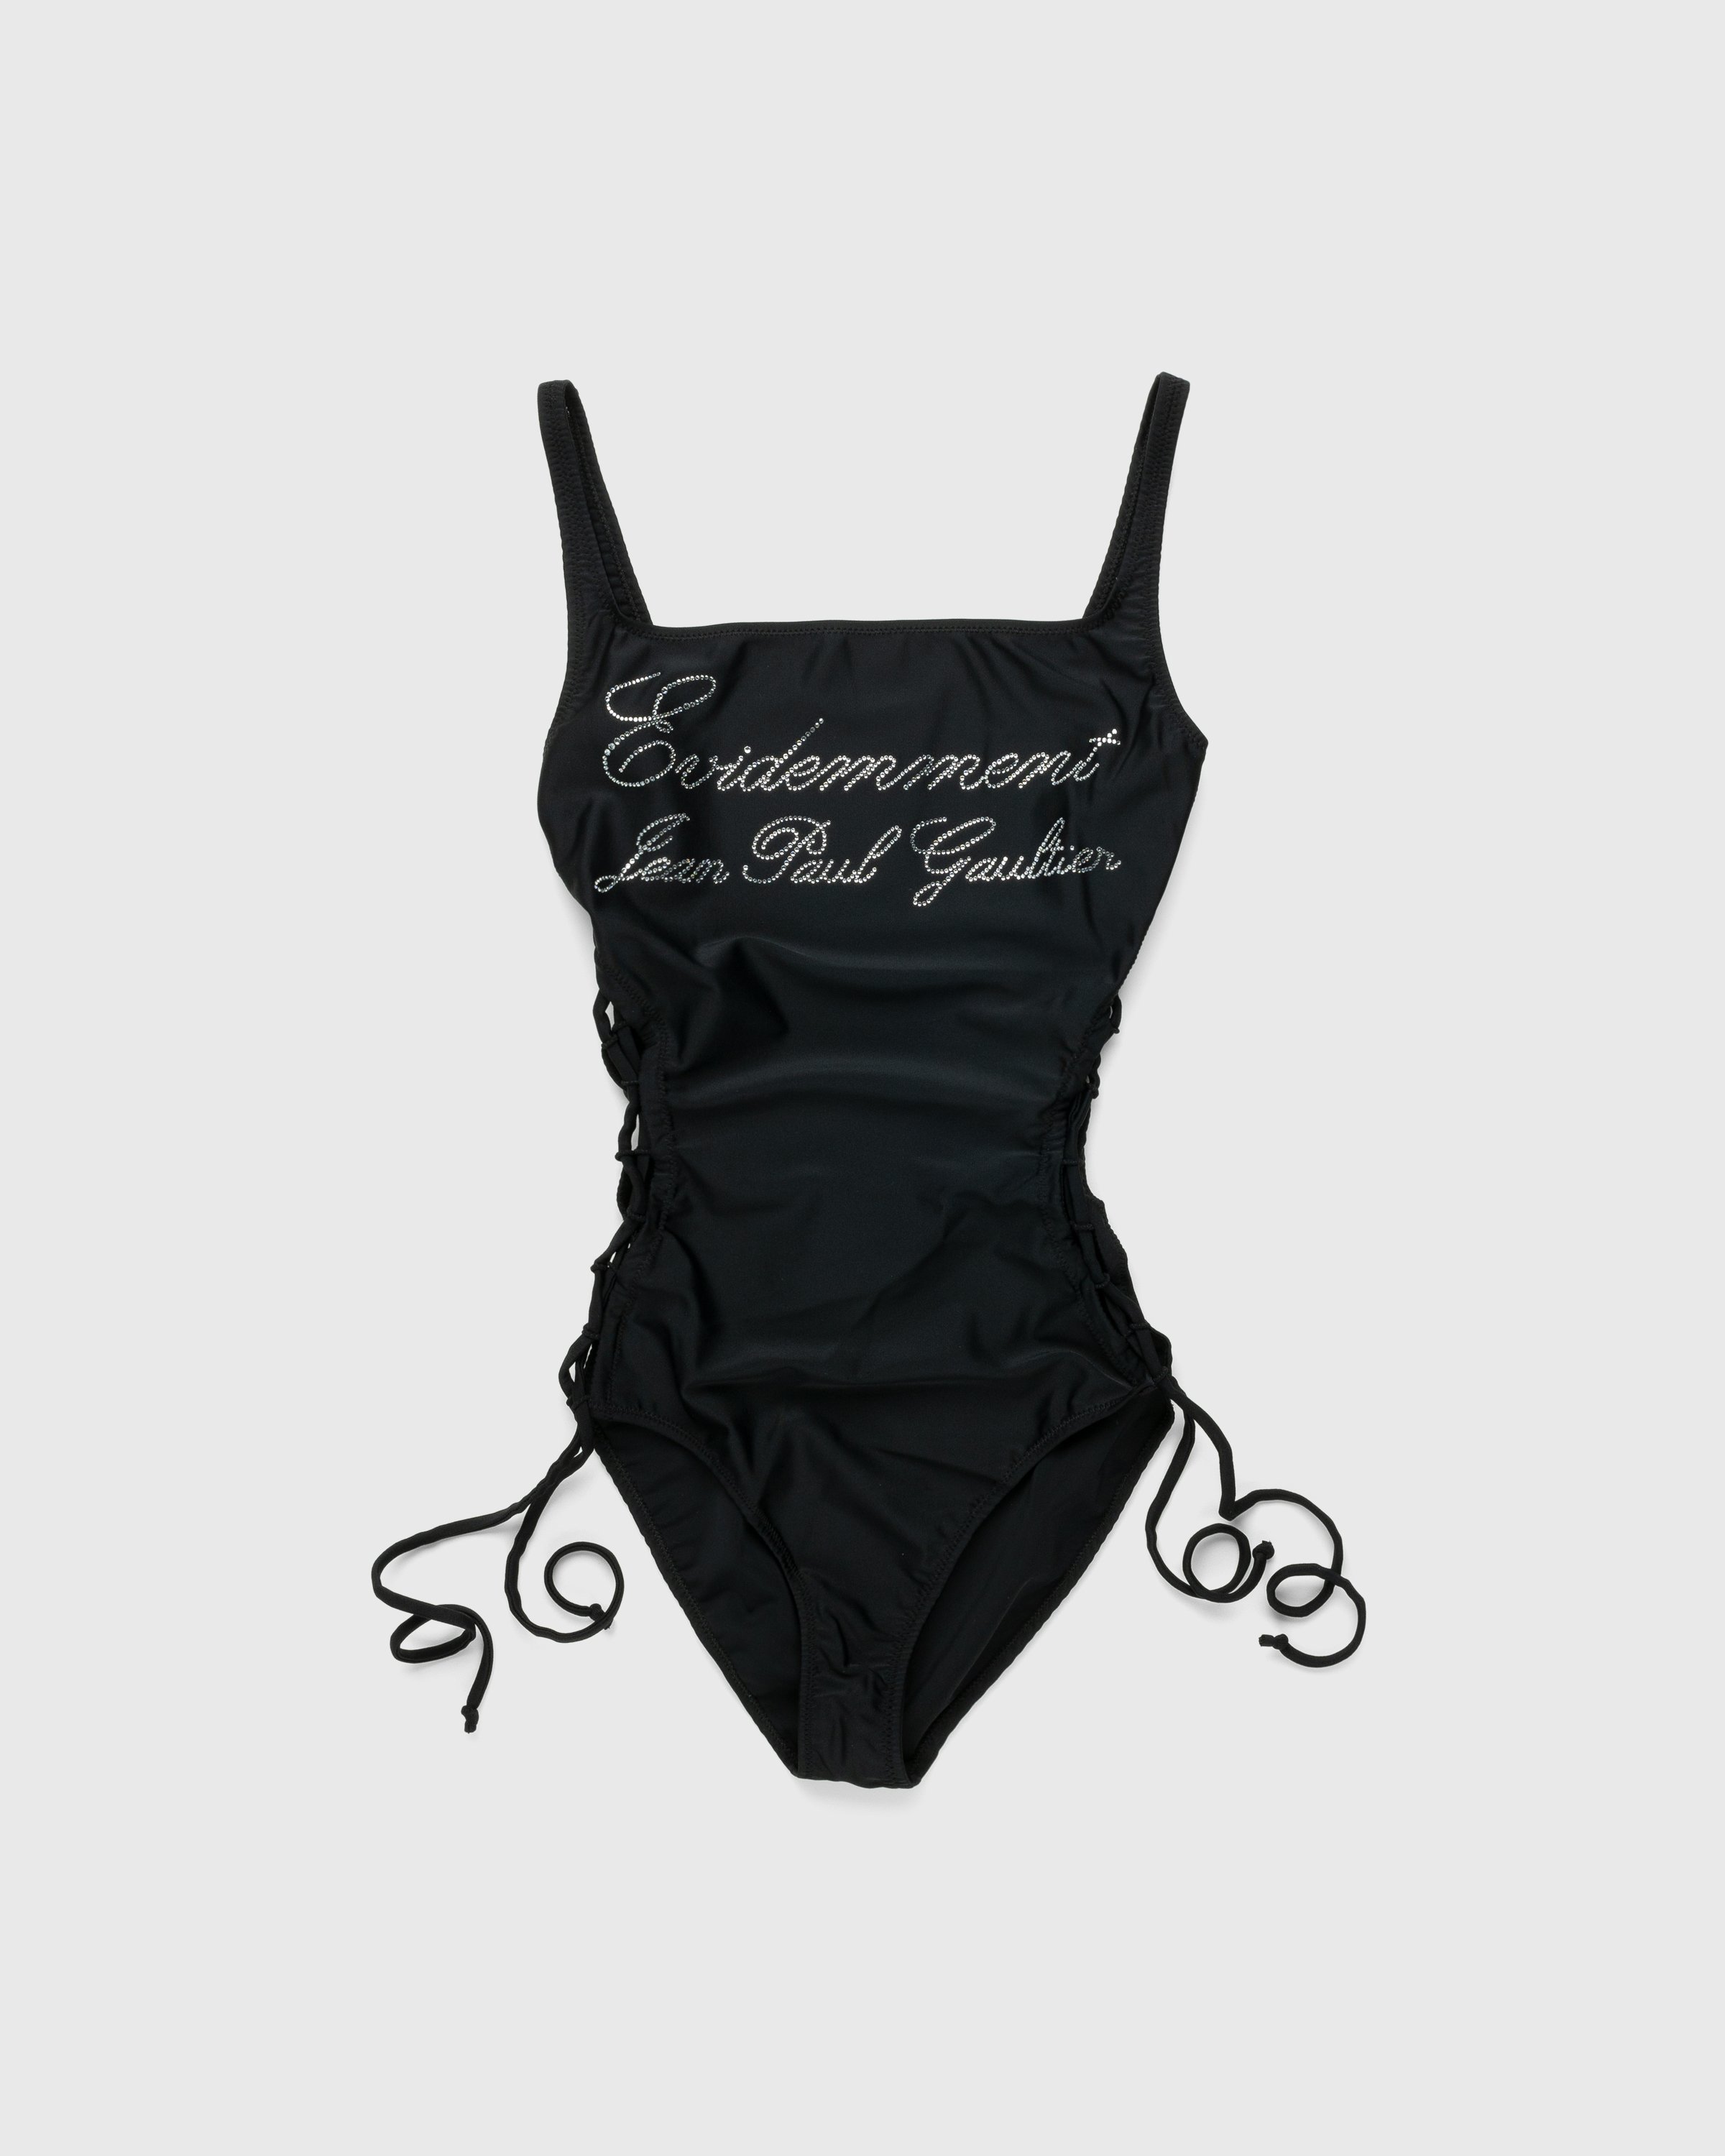 Jean Paul Gaultier - Évidemment Swimsuit Black - Clothing - Black - Image 1